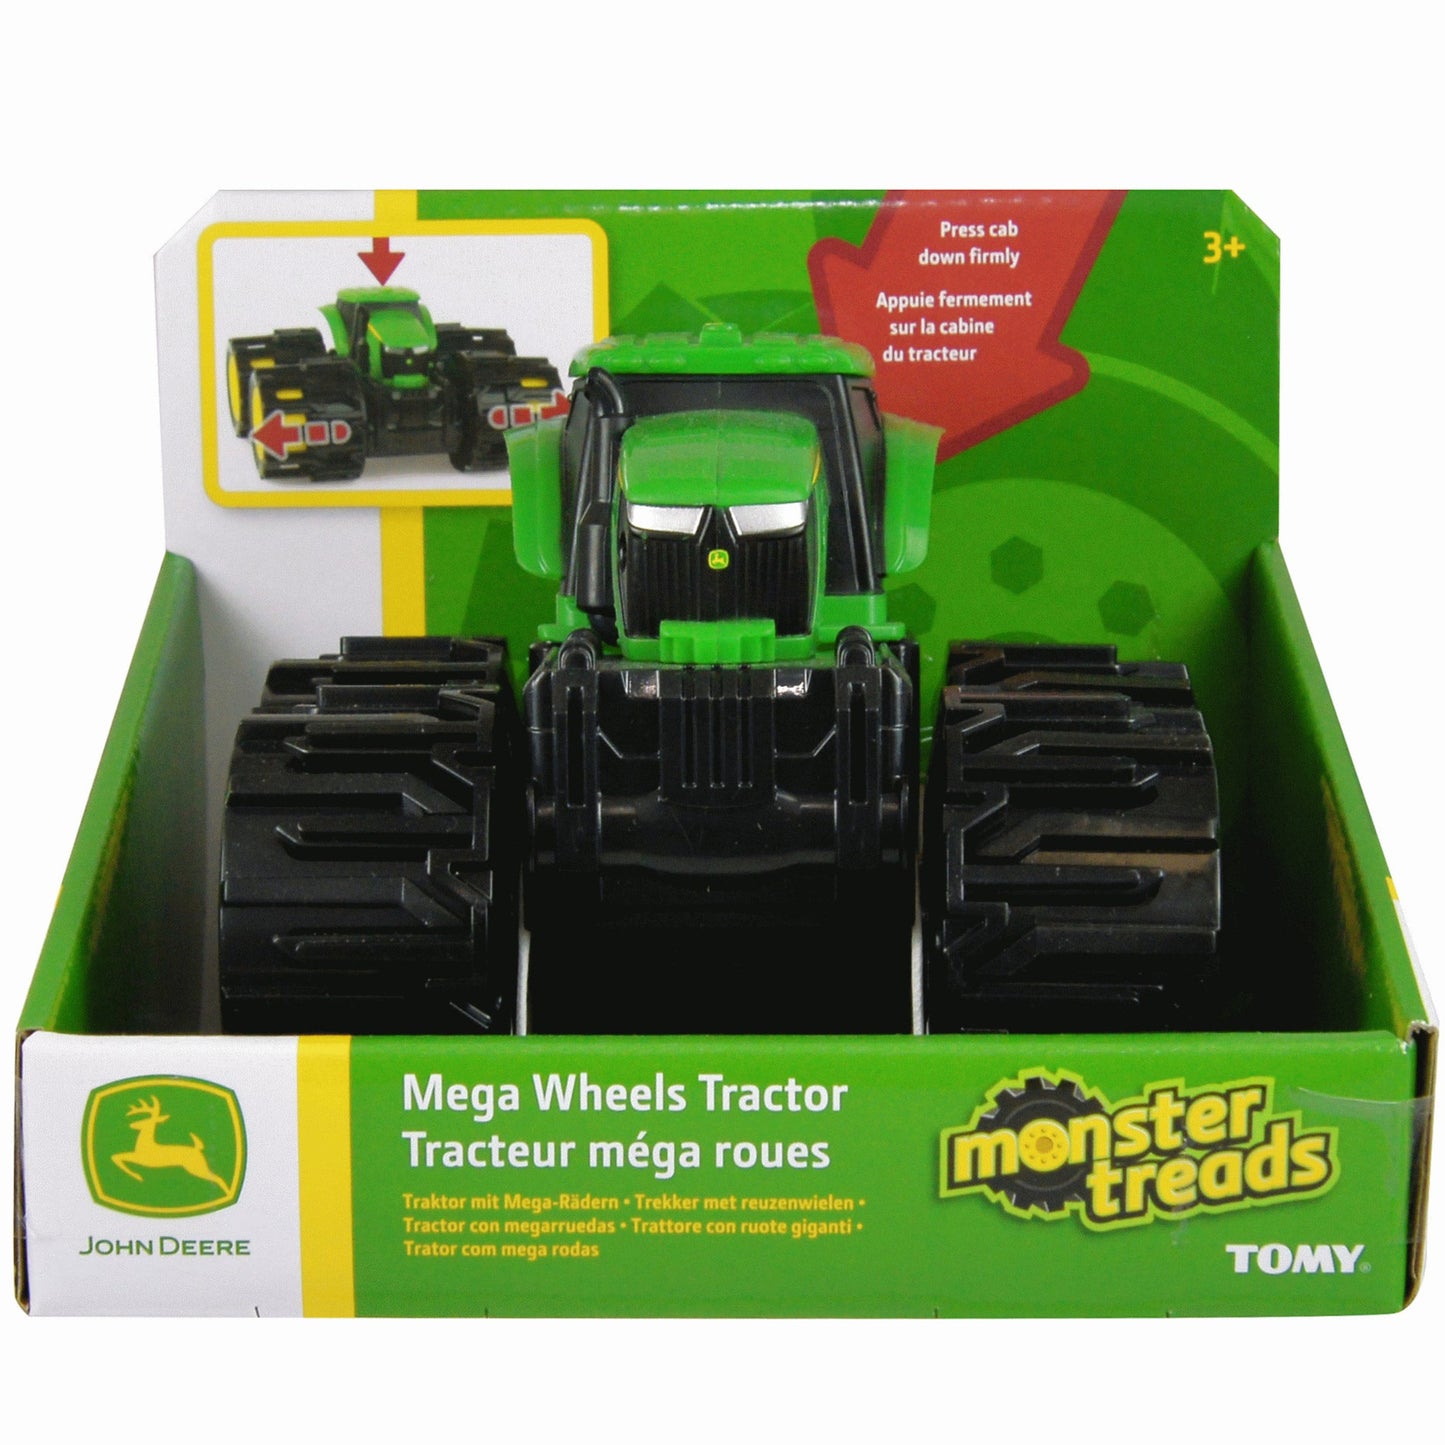 Monster Treads John Deere Mega Wheels Tractor